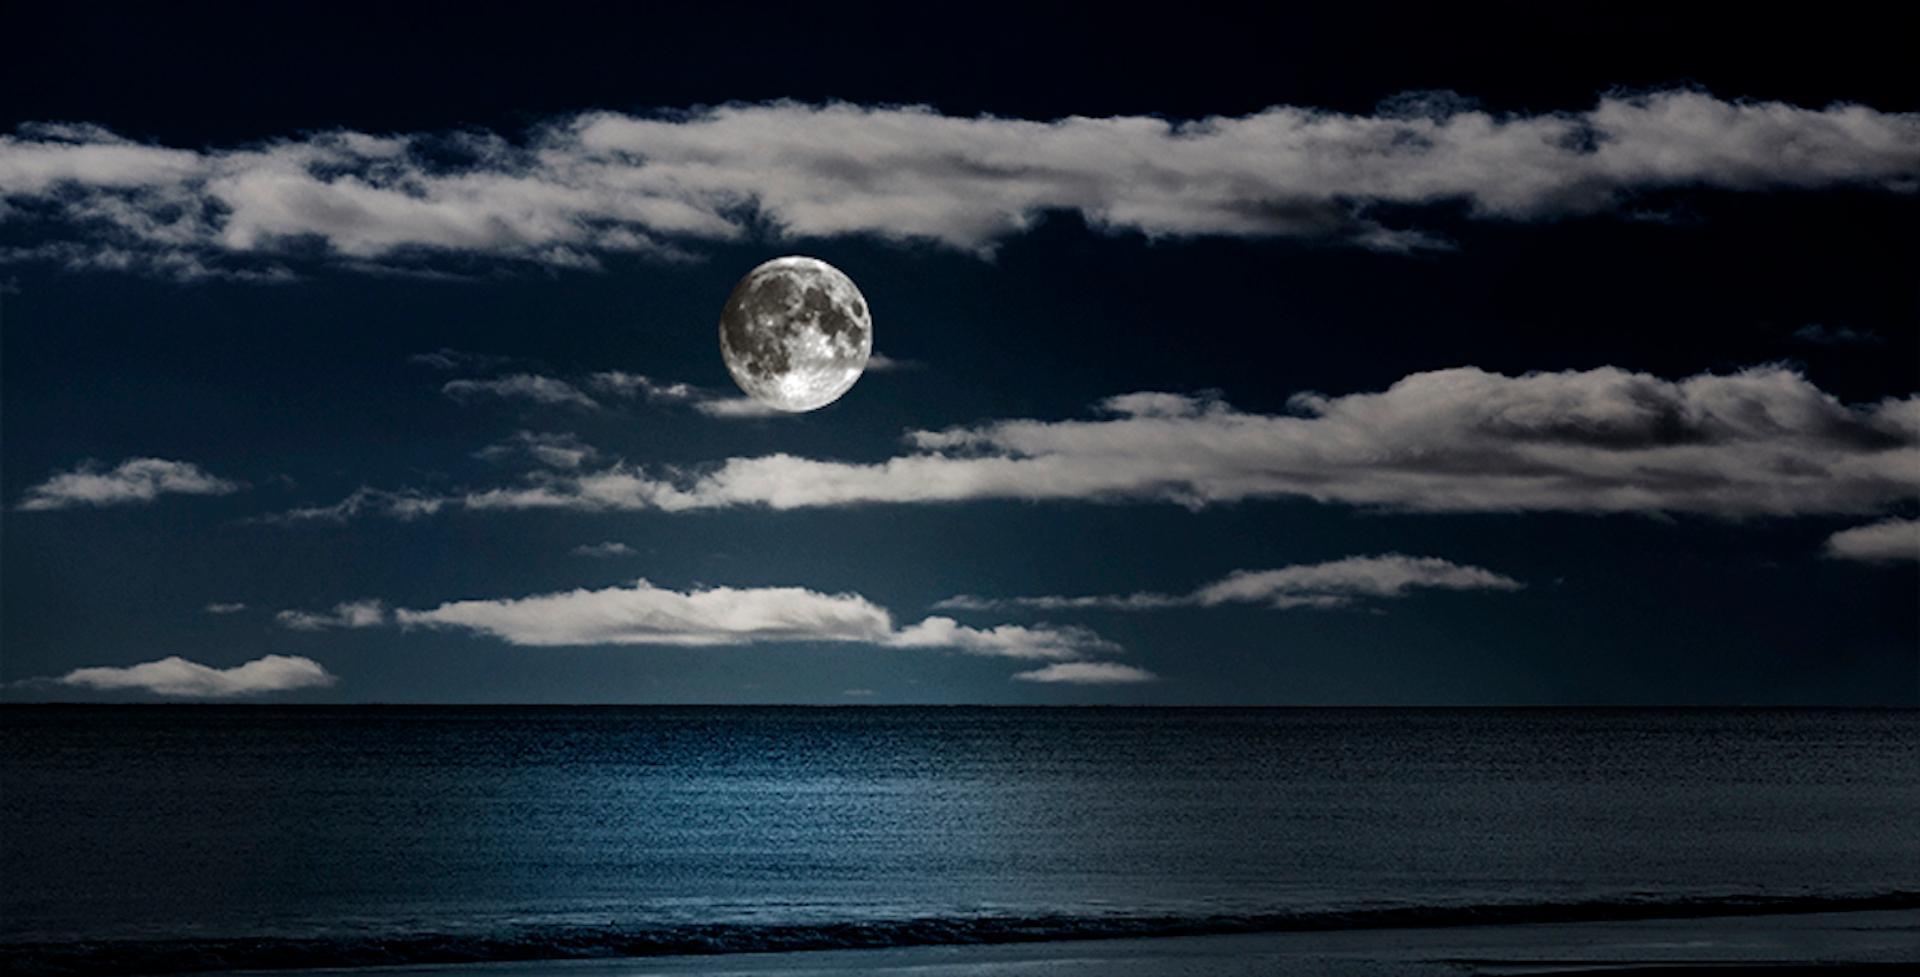 Lune #08 - Photograph de Bob Tabor